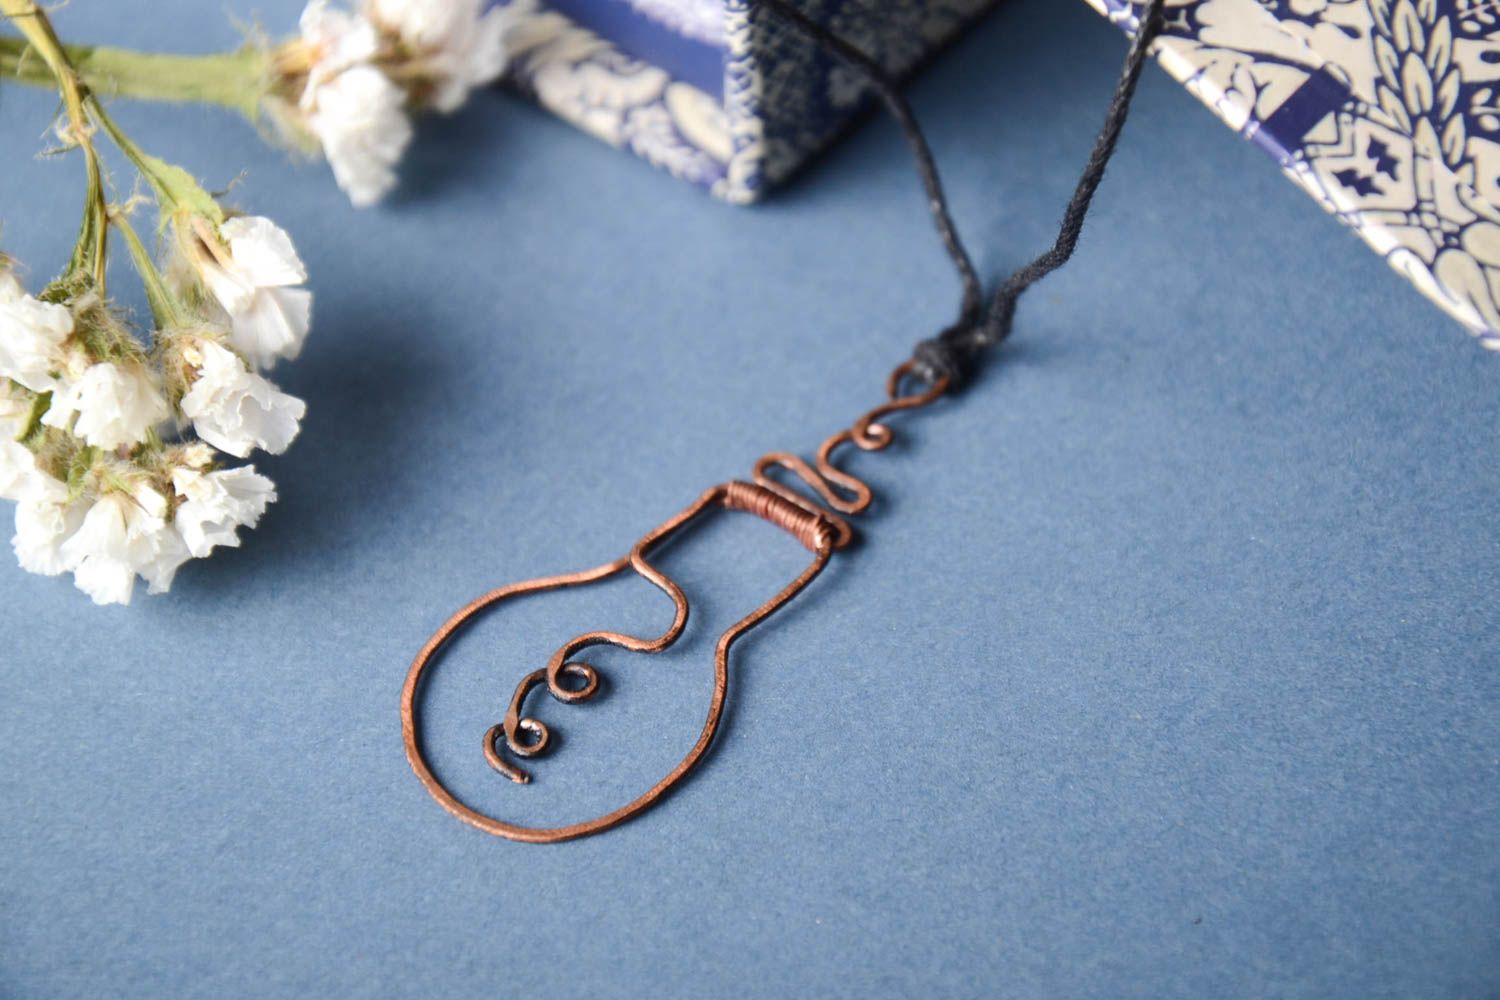 Handmade pendant copper pendant wire wrap pendant wire wrap accessories for girl photo 1